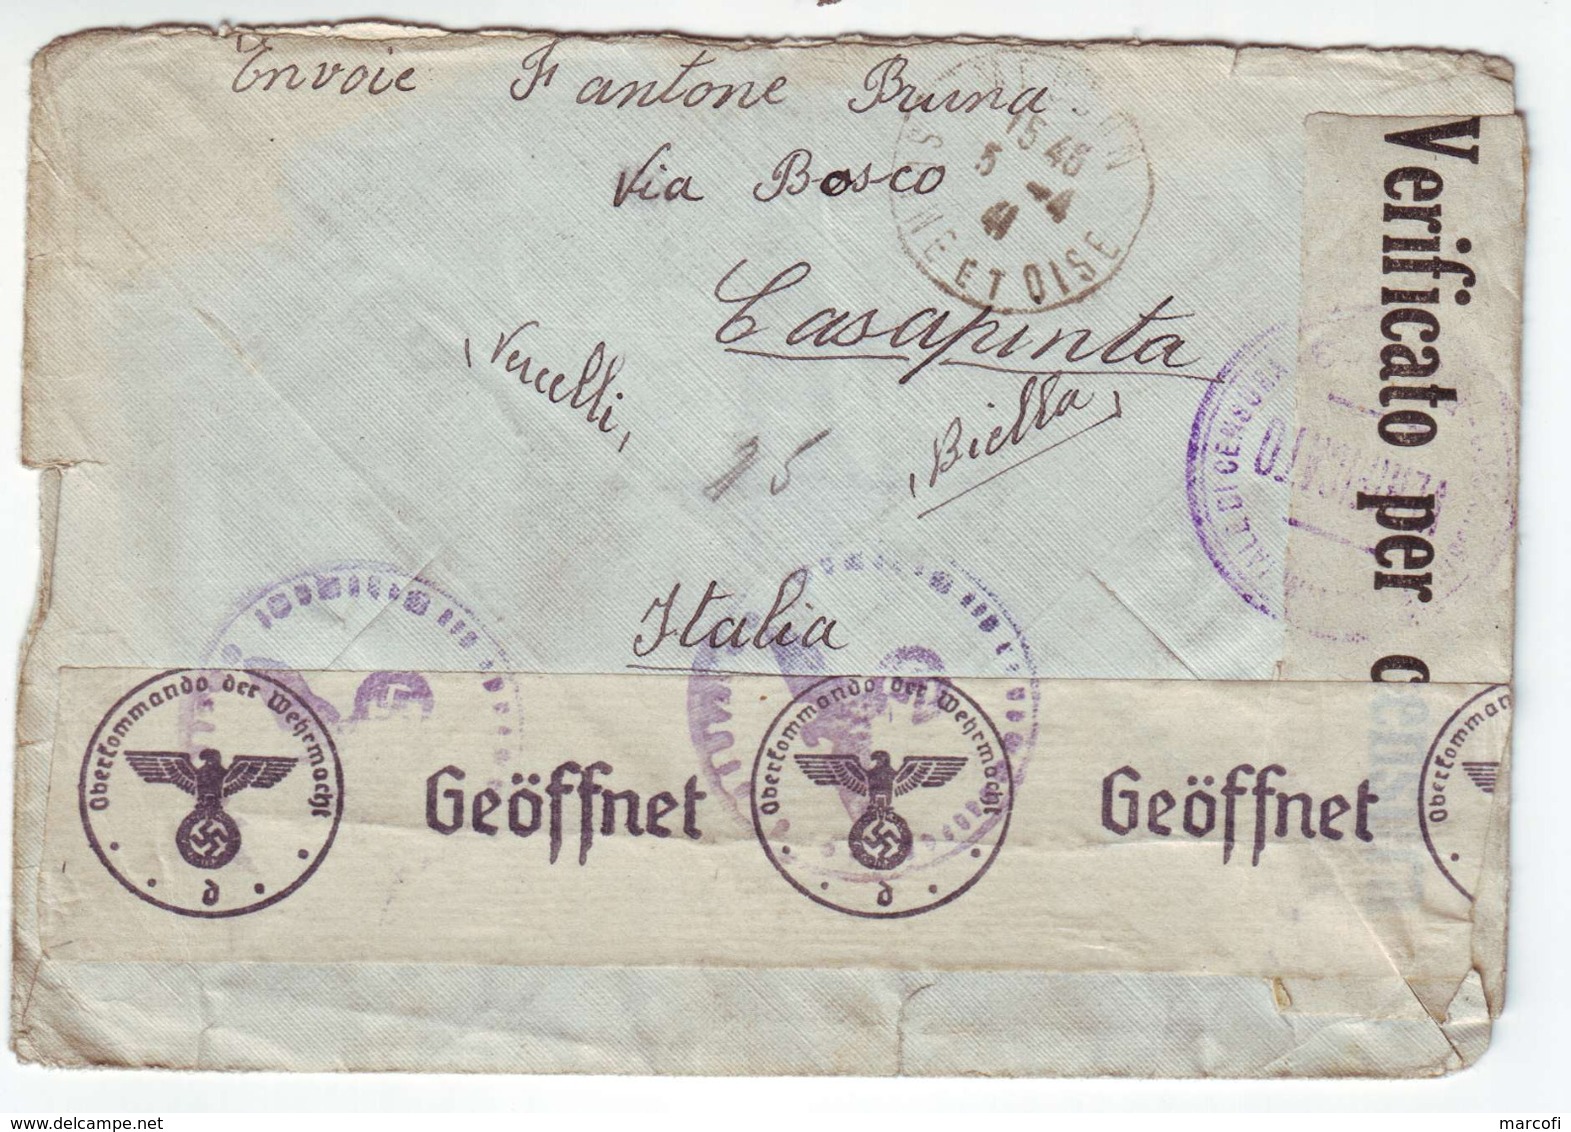 lot de 11 lettres censurées 2e guerre mondiale (1940-1945)